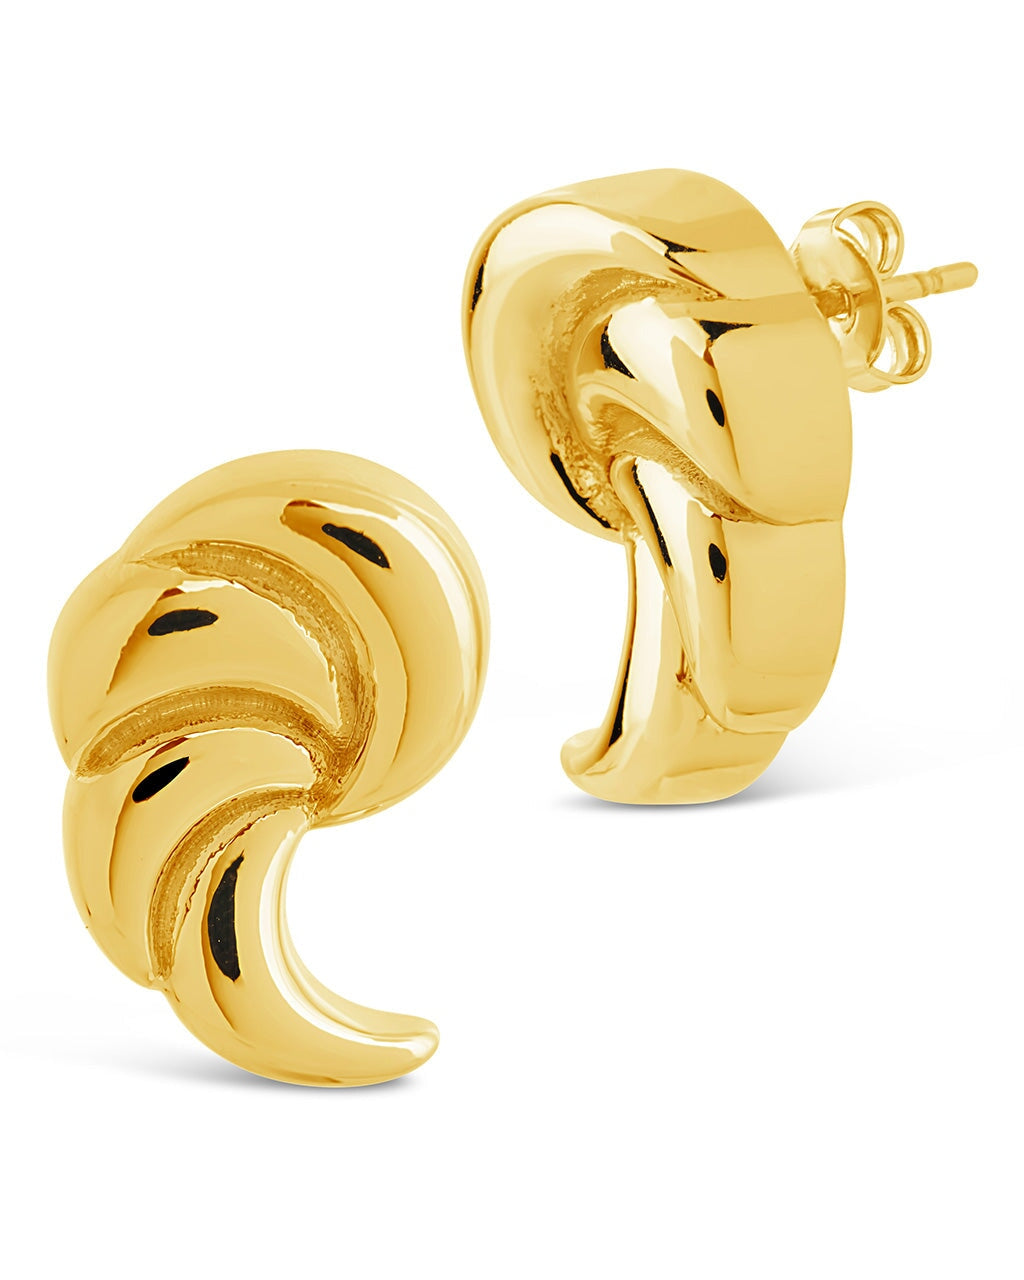 French Horn Stud Earrings Earring Sterling Forever Gold 